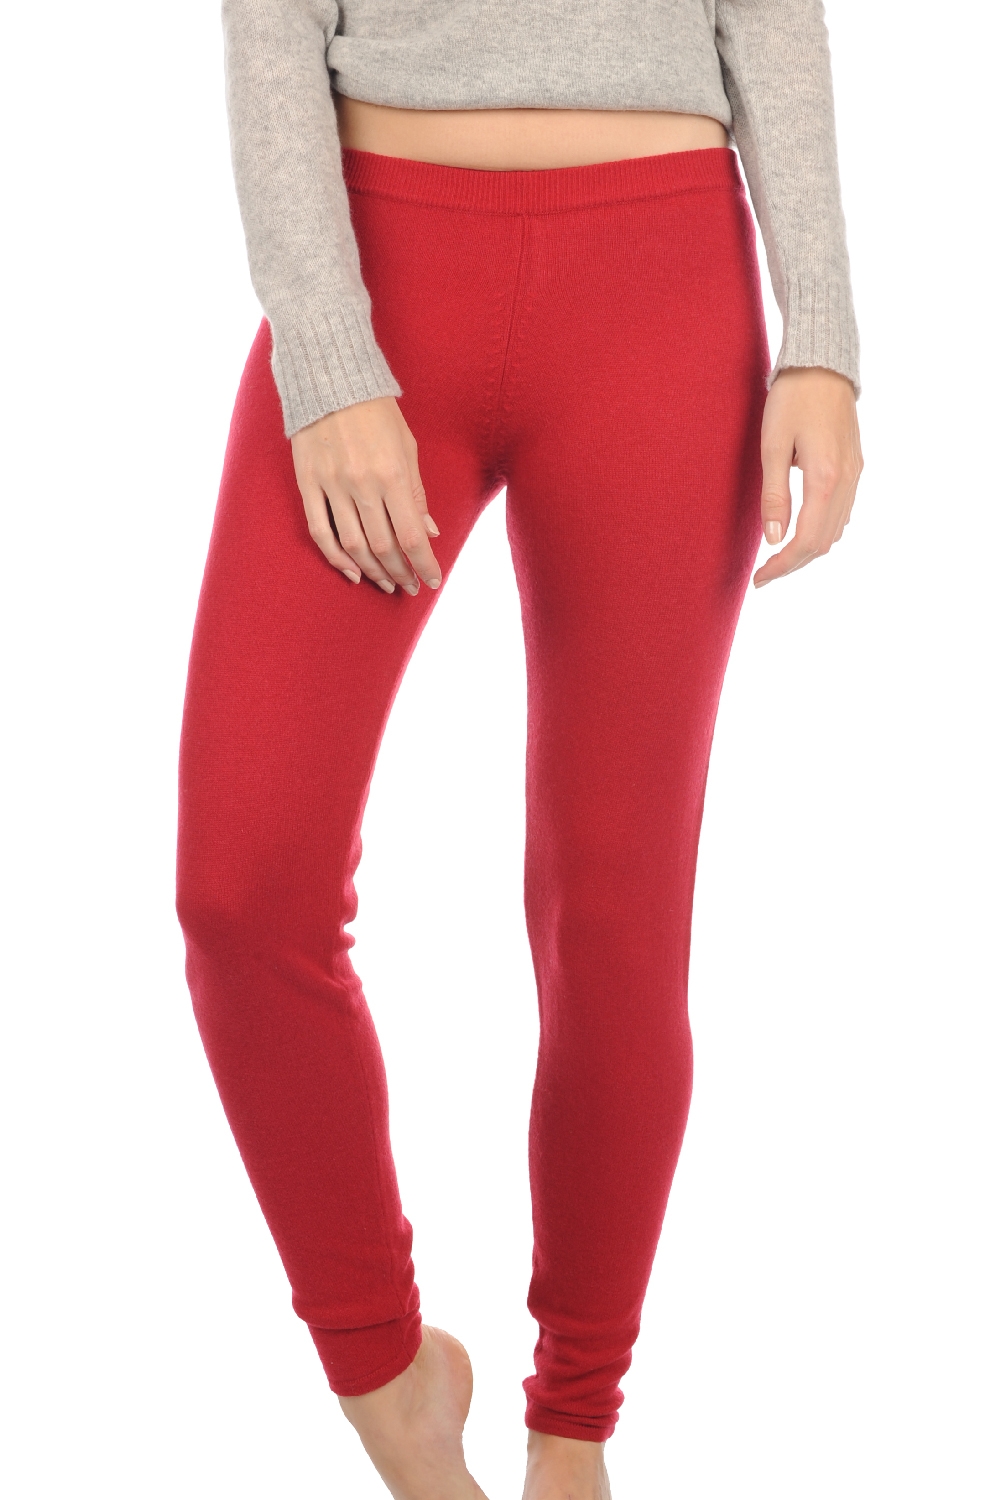 Cashmere cashmere donna pantaloni leggings xelina rosso rubino xl